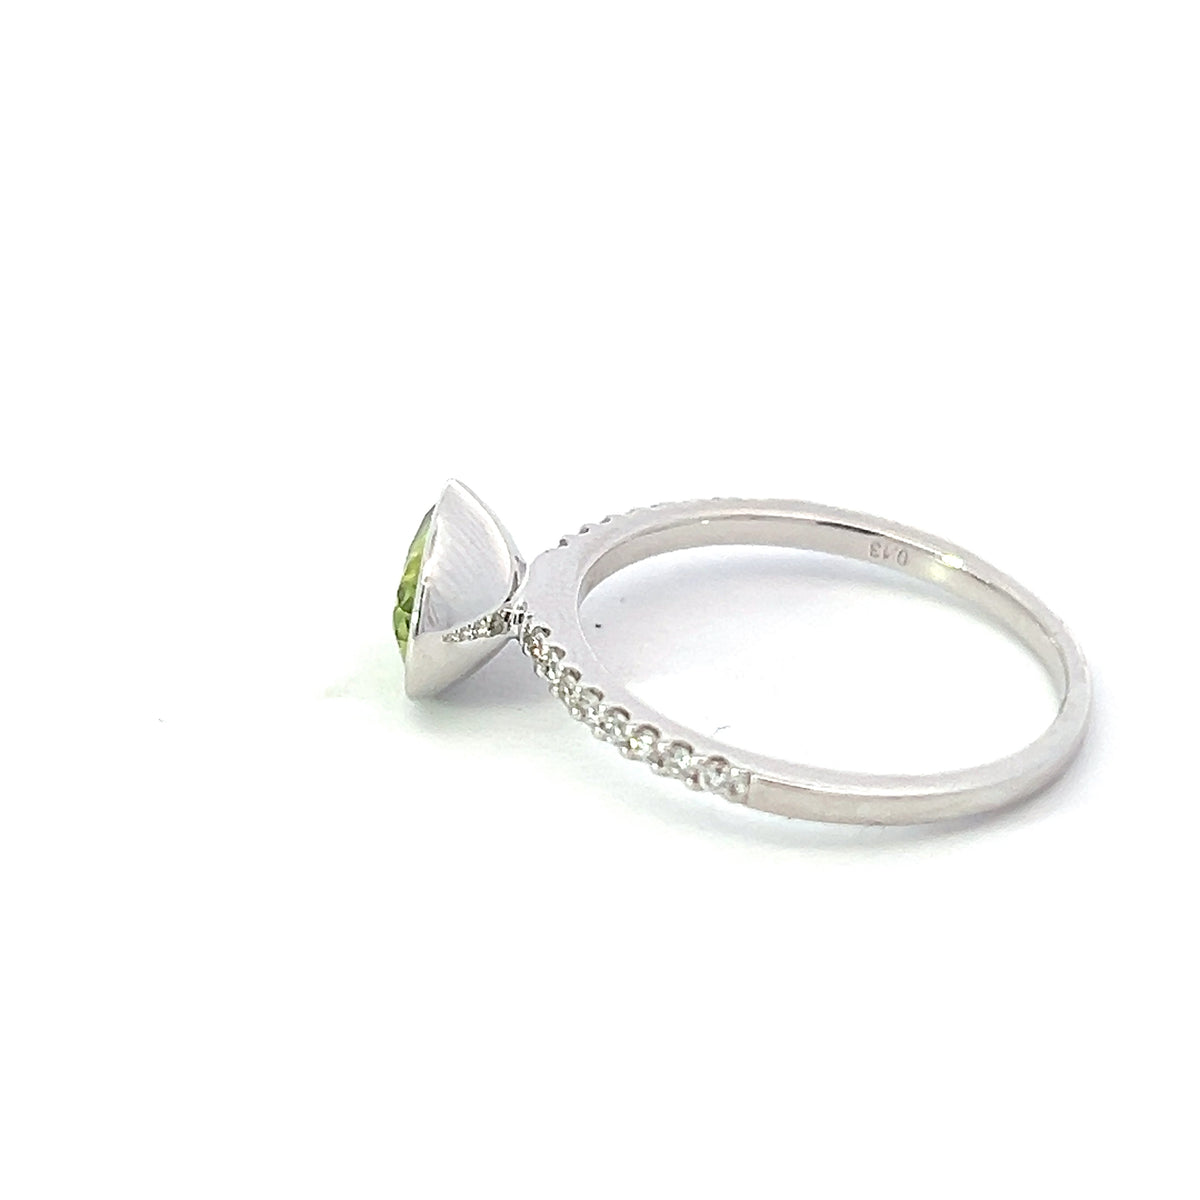 14K White Gold Peridot and Diamond Ring - Size 7